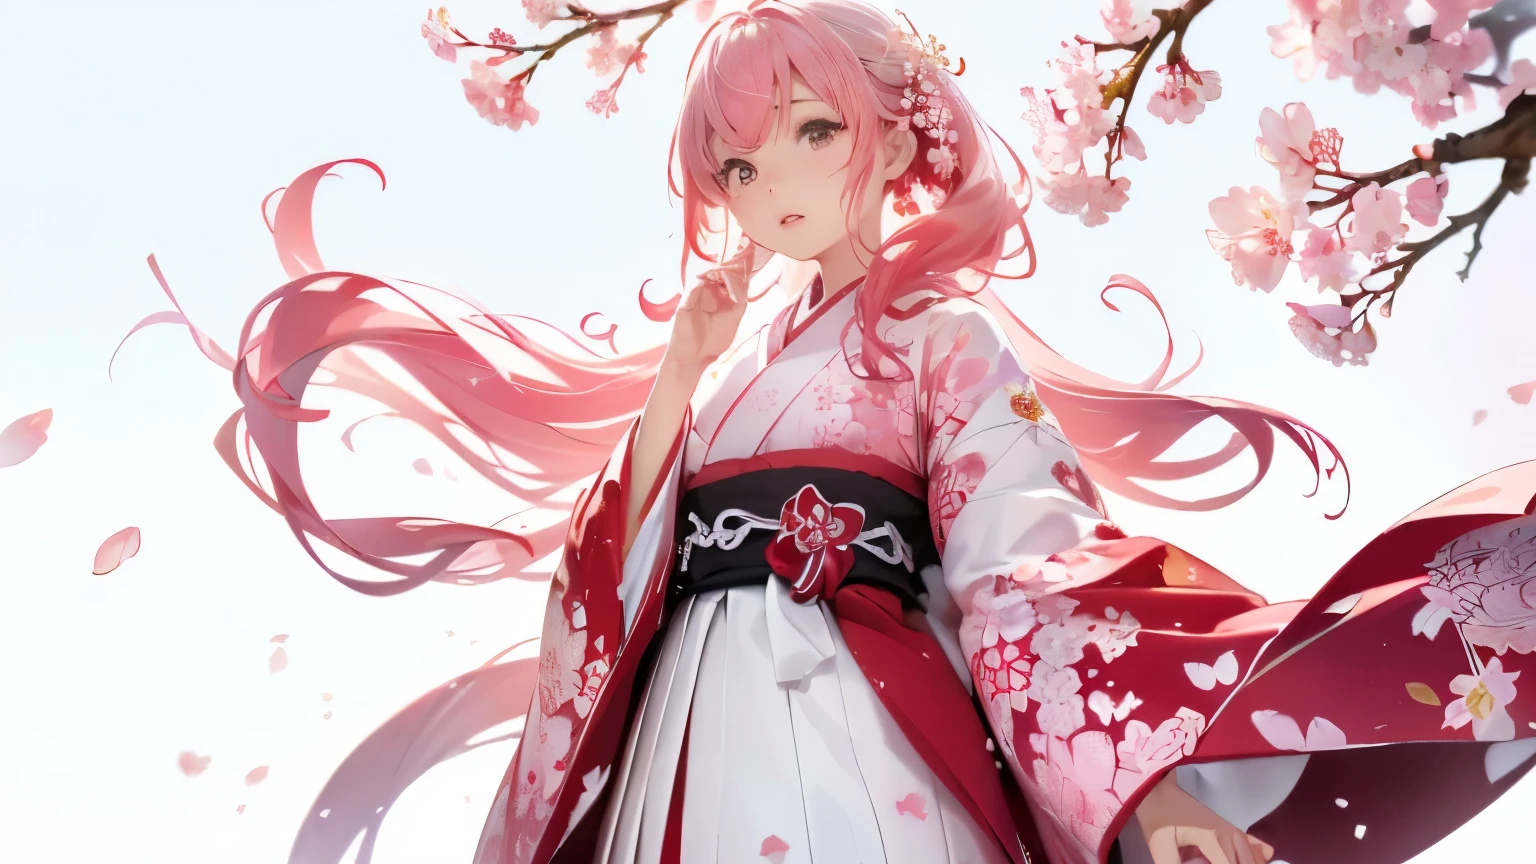 (((fondo de flor de cerezo、mundo blanco)))、fondo de pantalla de unidad 8k、ultra detallado、hermoso y estetico、Obra maestra、de la máxima calidad、(enredoの、Mandala、enredo、enredo)、(Fractal Art:1.3)、Una chica、Hermoso cabello largo y rosado、japonés、rosa grande、red kimono、Vestidos de Japón、Muy detallado、ángulo dinámico、tiro de vaquero、La forma más bella es el caos.、elegant、diseño brutalismo、colores vibrantes、Romance、Atmósfera、Nota de éxtasis、Las notas de transmisión son visibles、(((Fondo blanco、fondo blanco puro、circulo rojo))),Caminar y disfrutar de la observación de los cerezos en flor.。